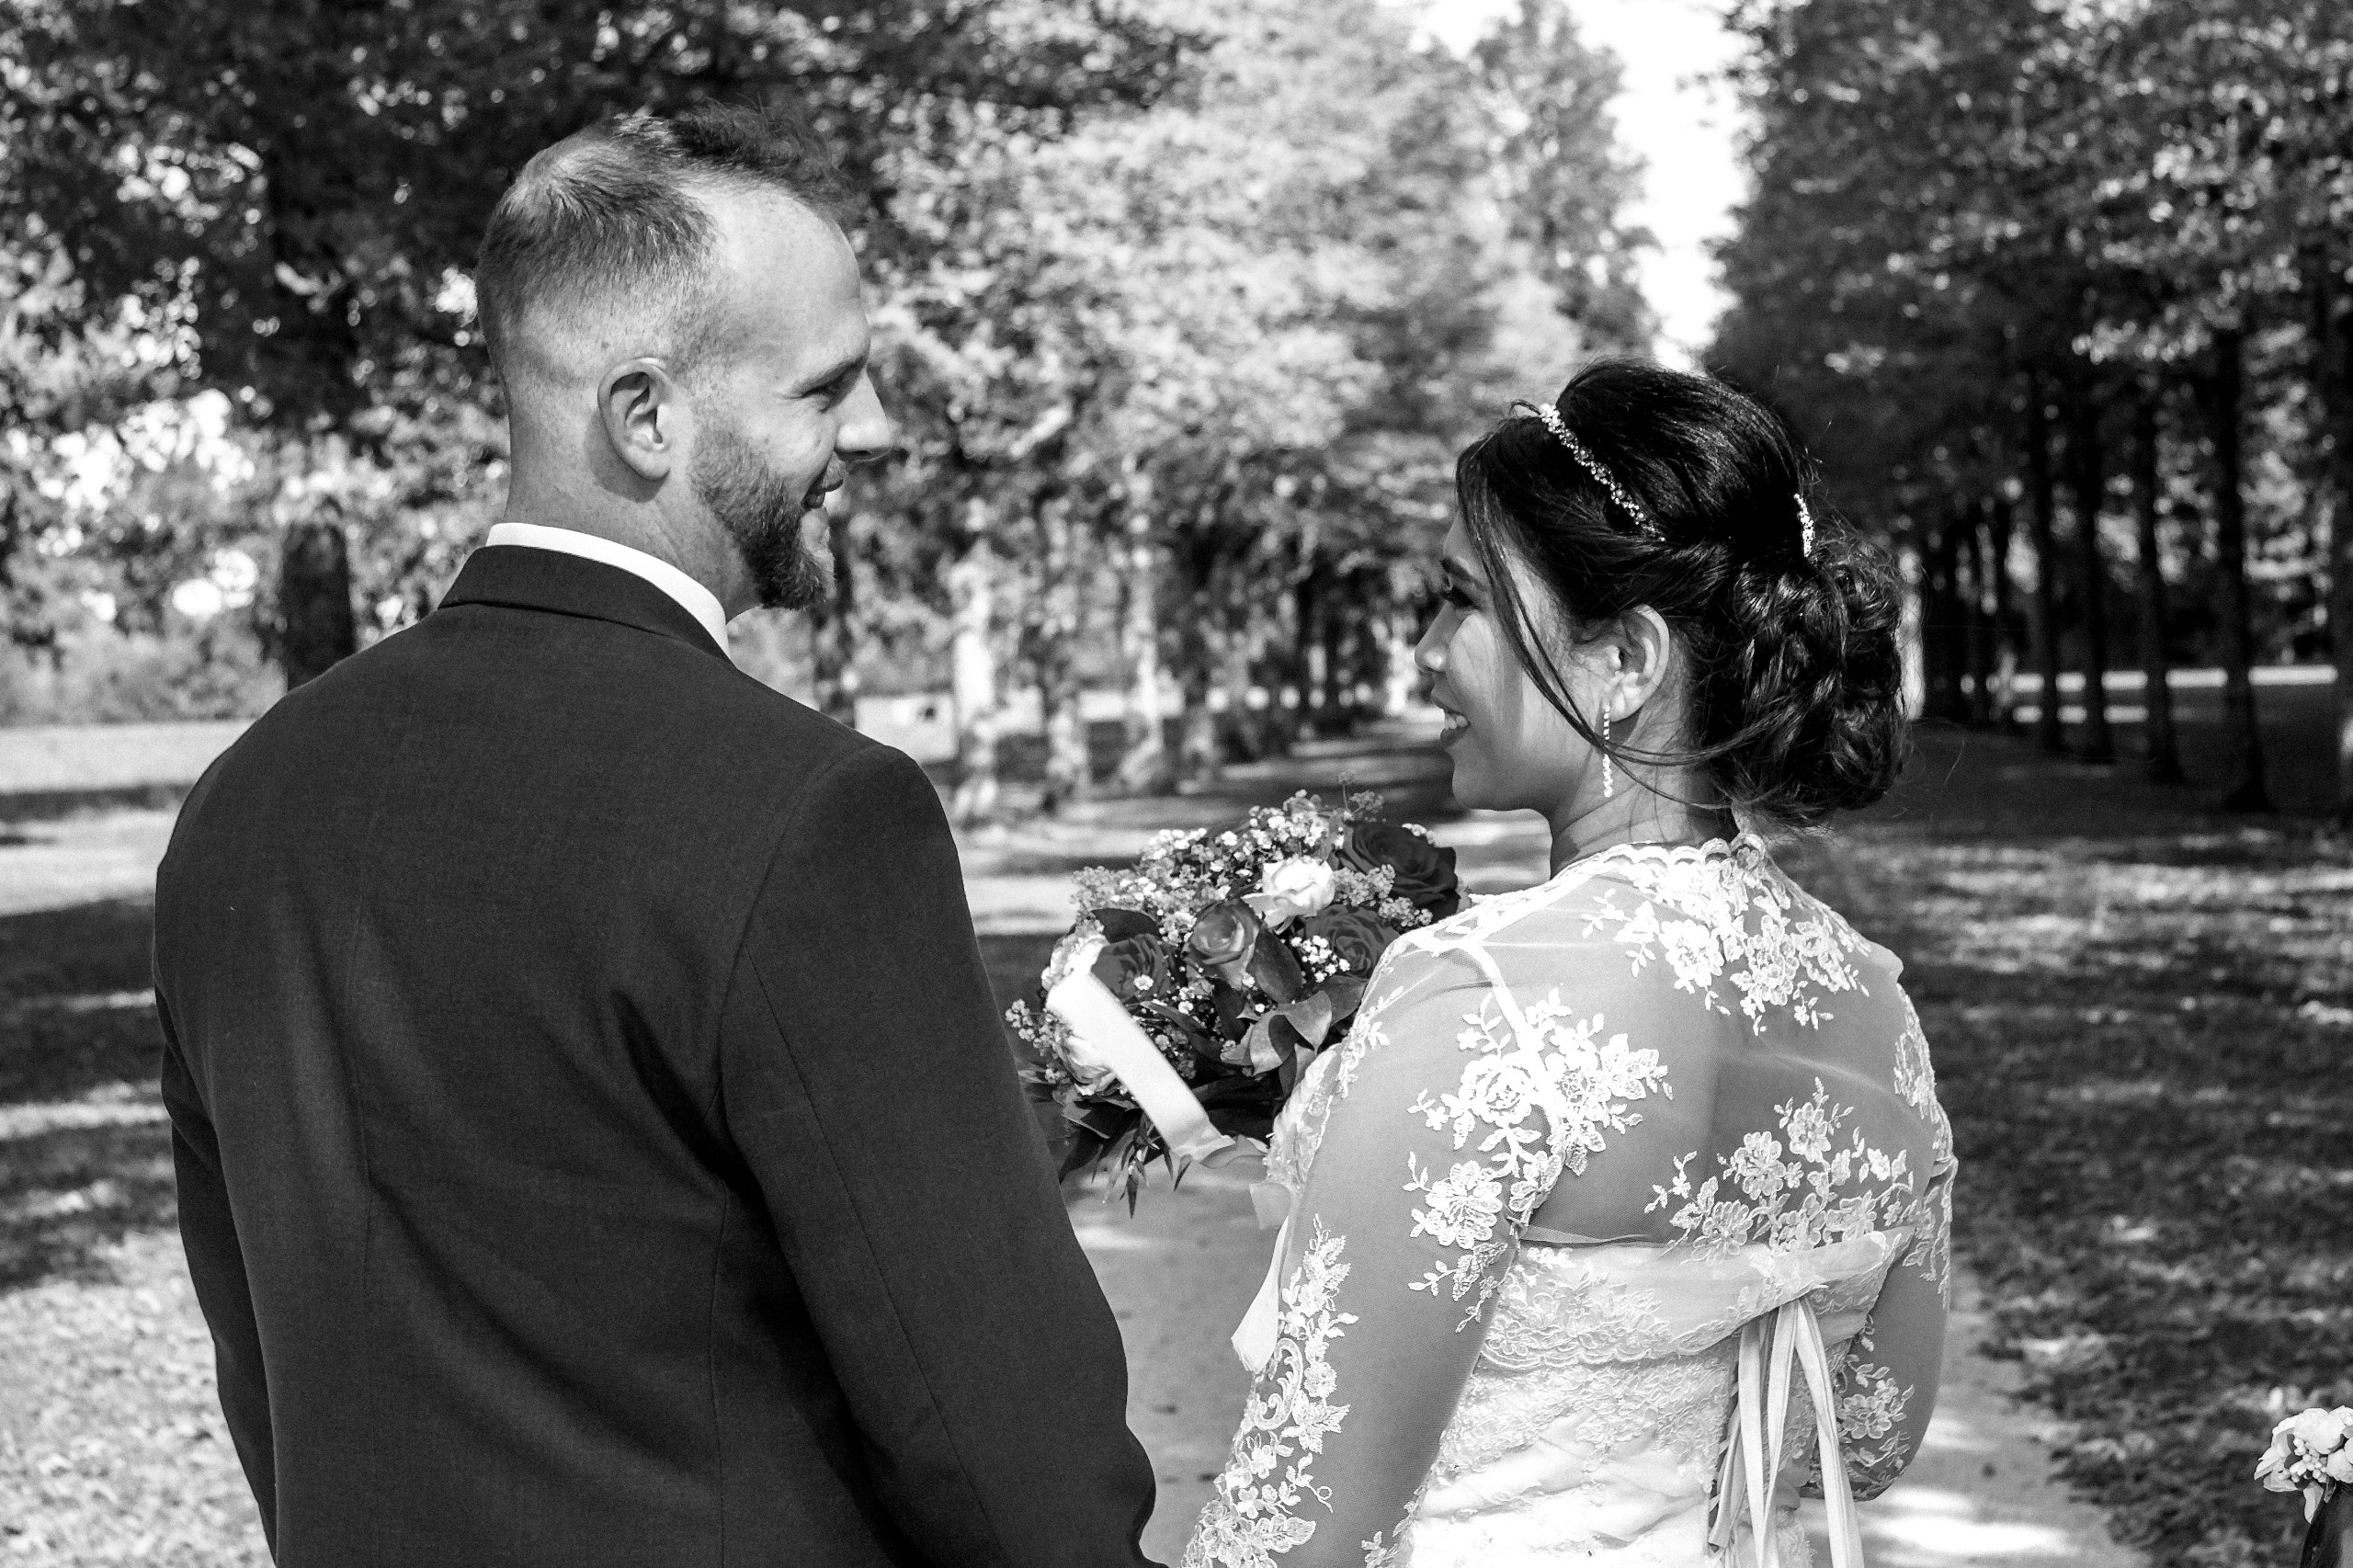 Hochzeitsfotograf im Gro&szlig;raum Heidelberg. Ich schaffe als Fotograf Ihrer Hochzeit emotionale, preiswerte Fotografie, bereits ab 280 &euro;